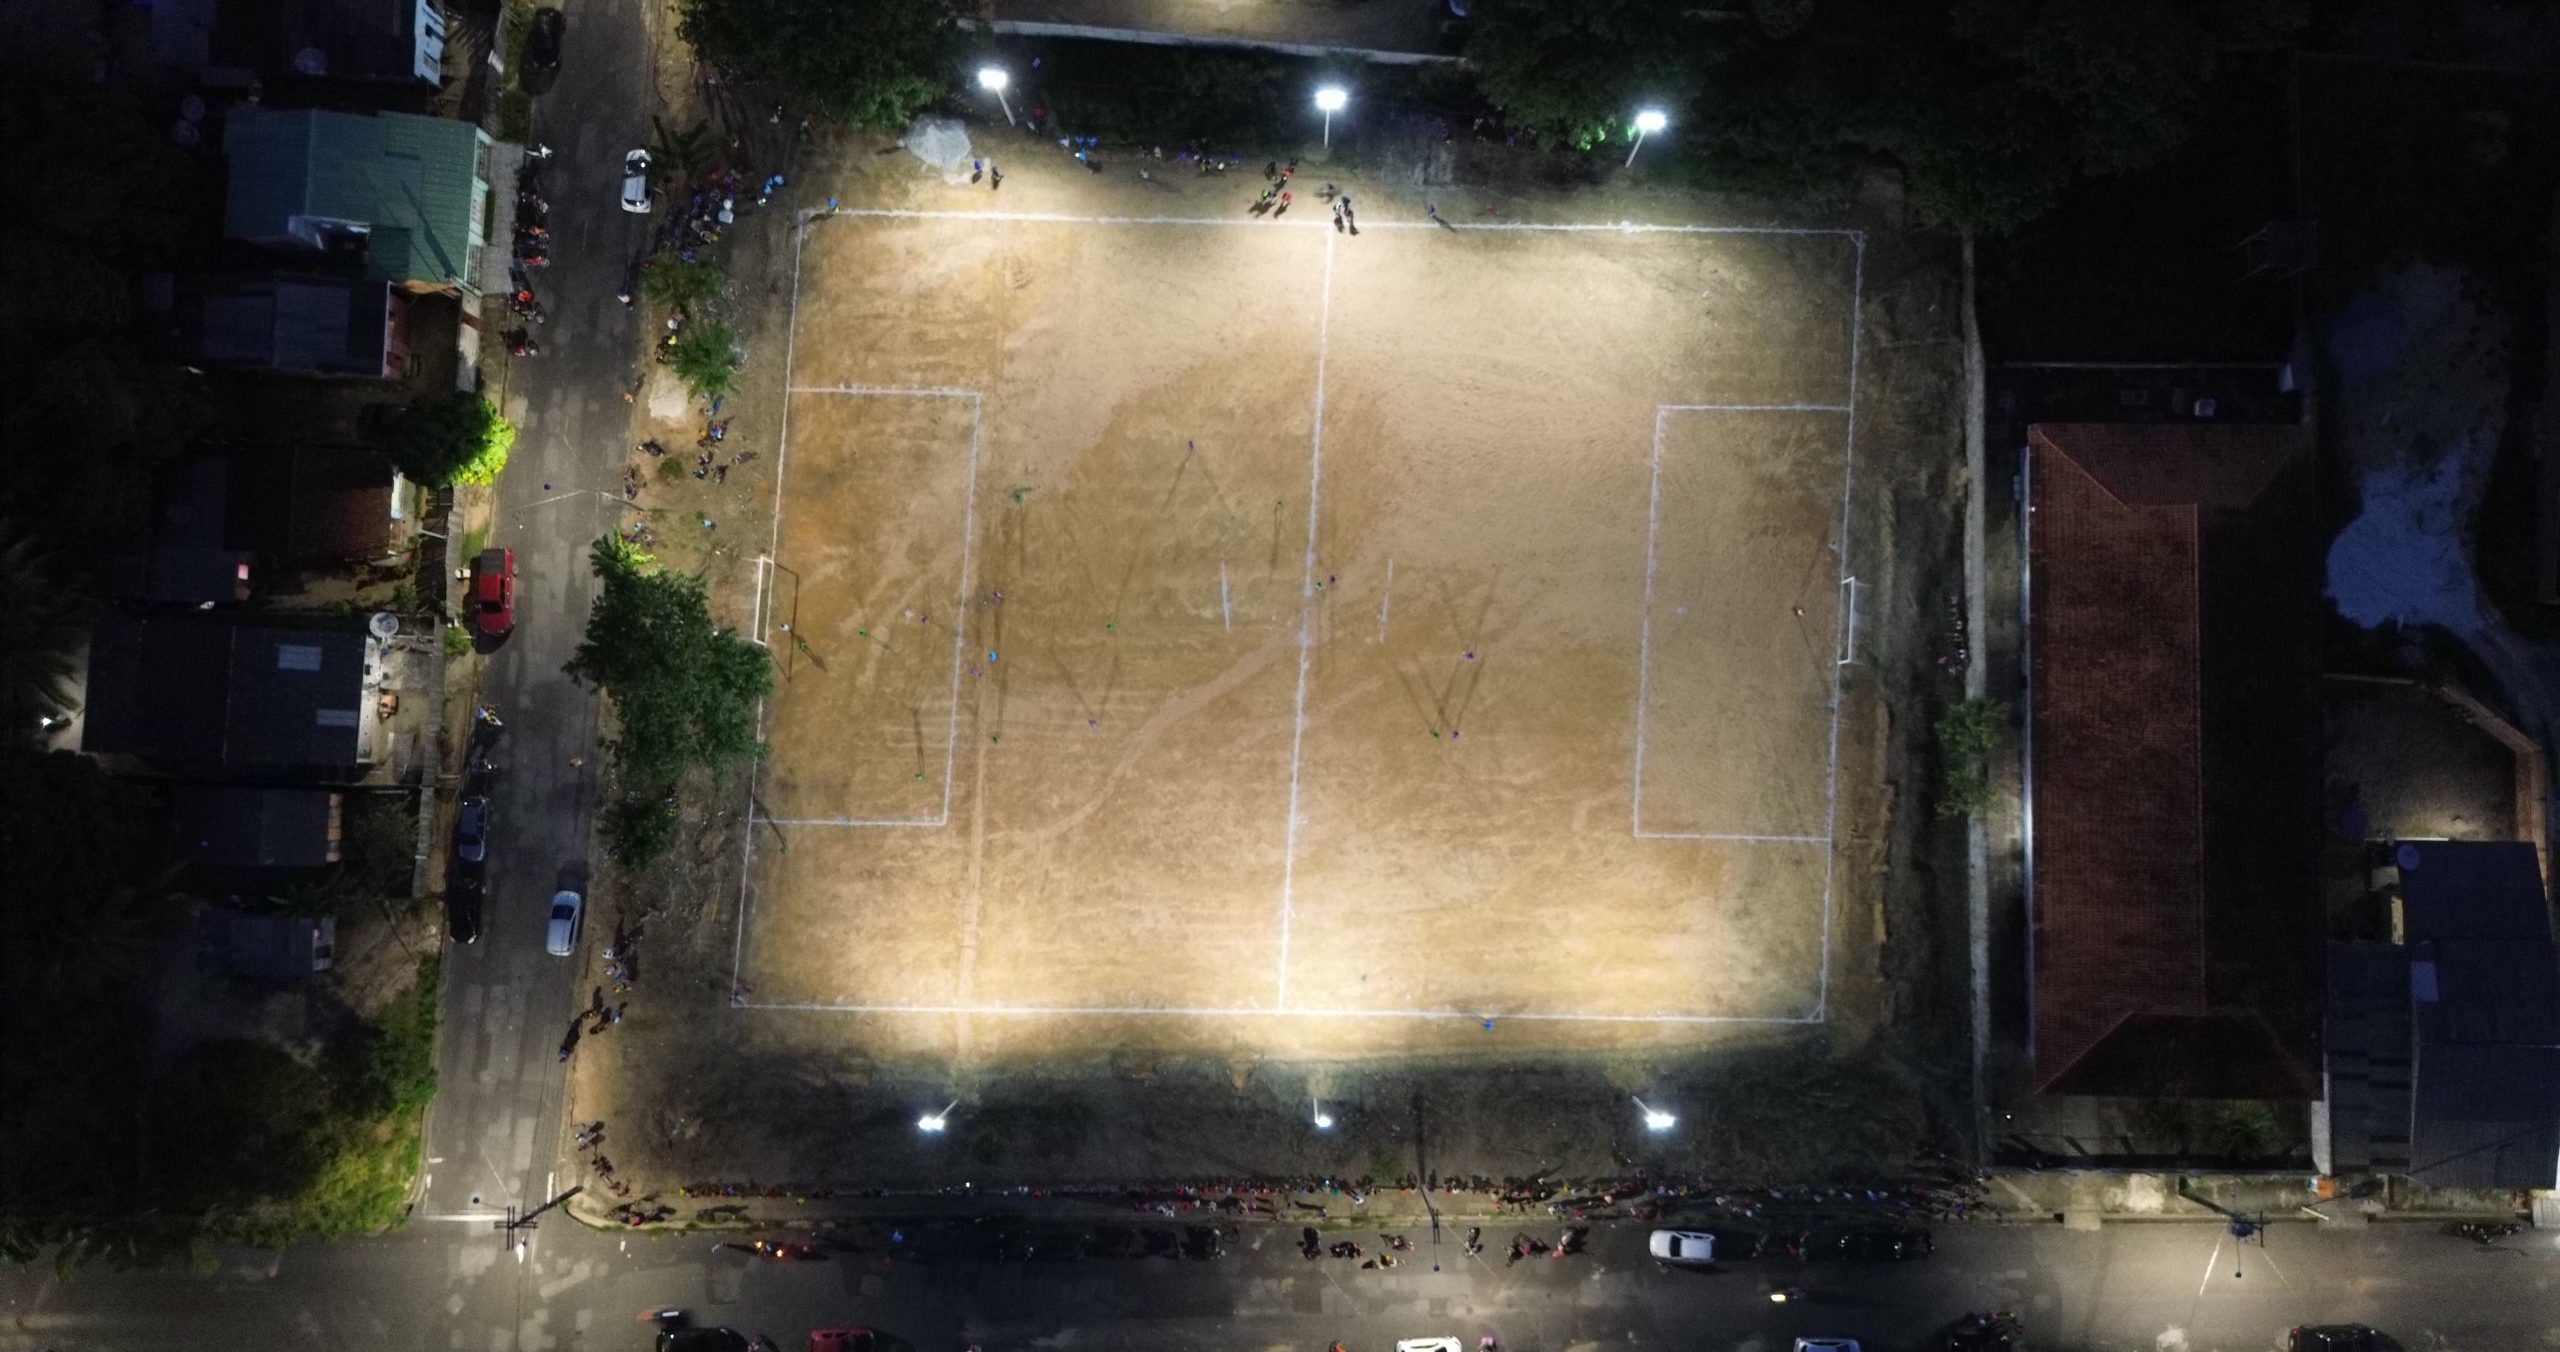 Iluminação em LED Transforma Campo de Futebol no Bairro São Pedro em Ponto de Encontro Noturno